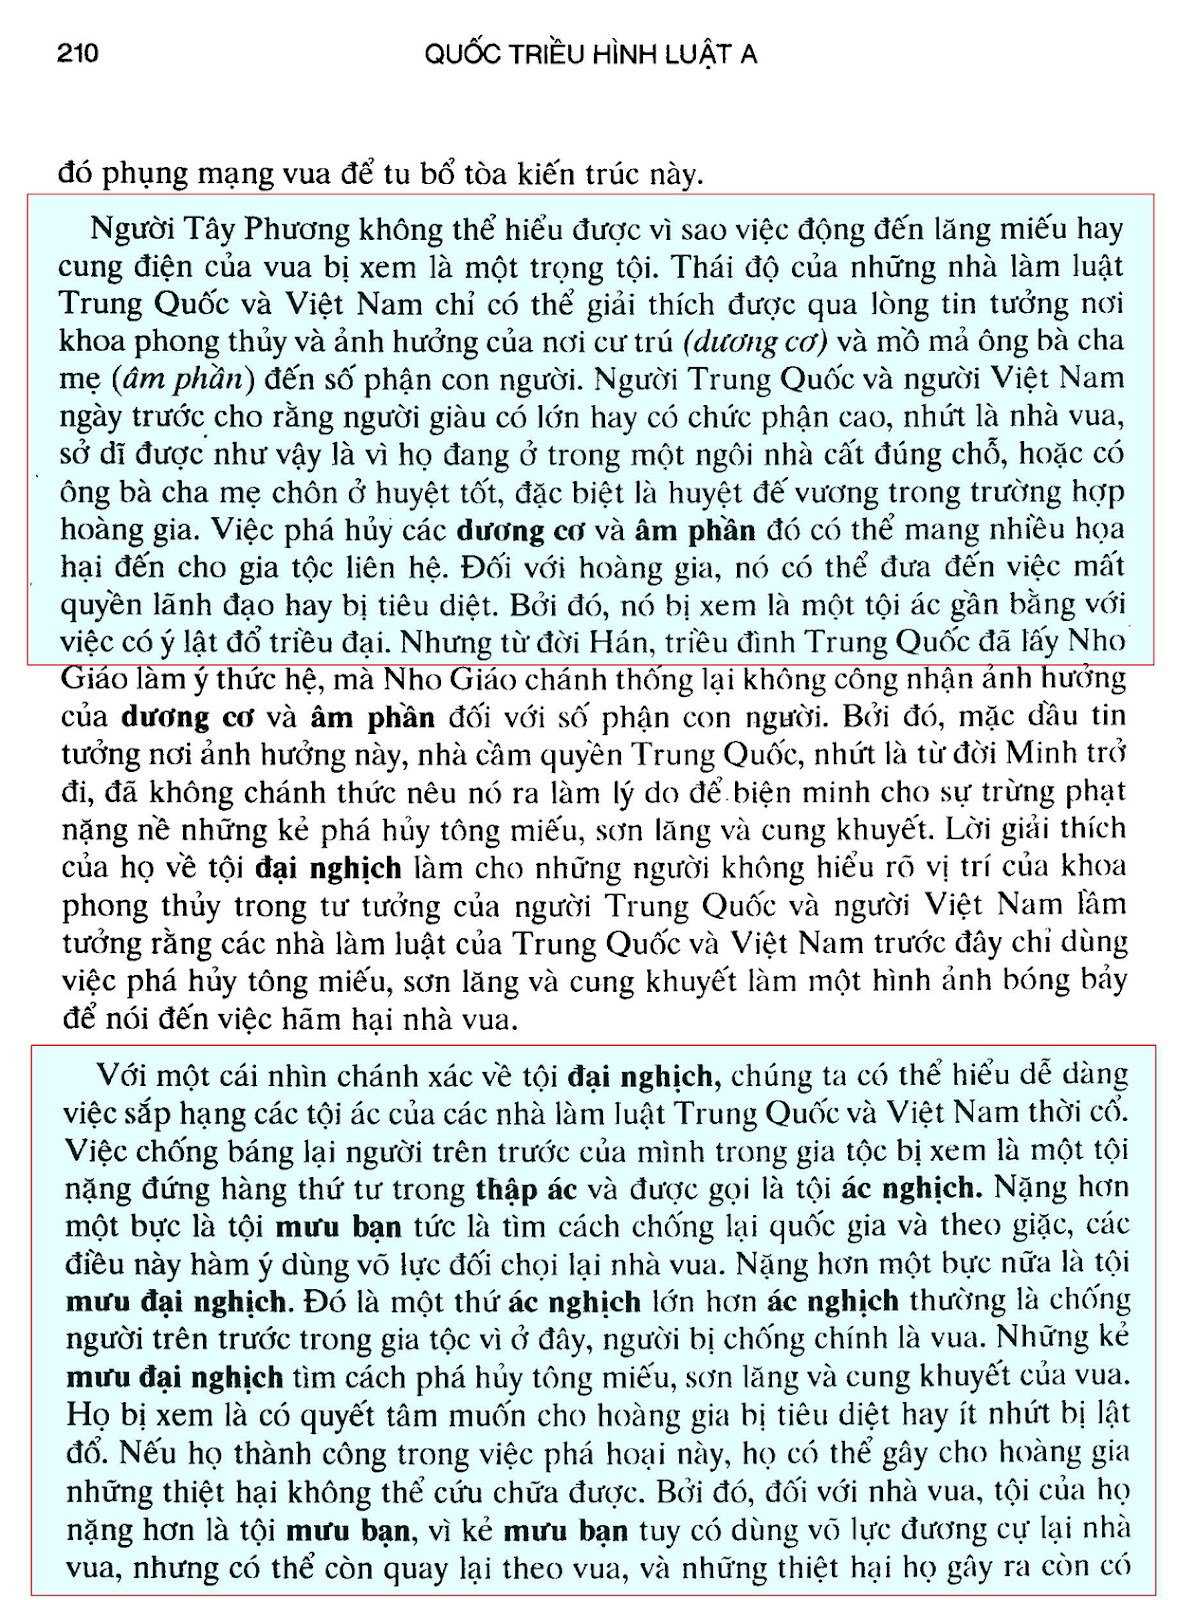 Trang 210 Quốc Triều Hình Luật quyển A - Nguyễn Ngọc Huy.jpg